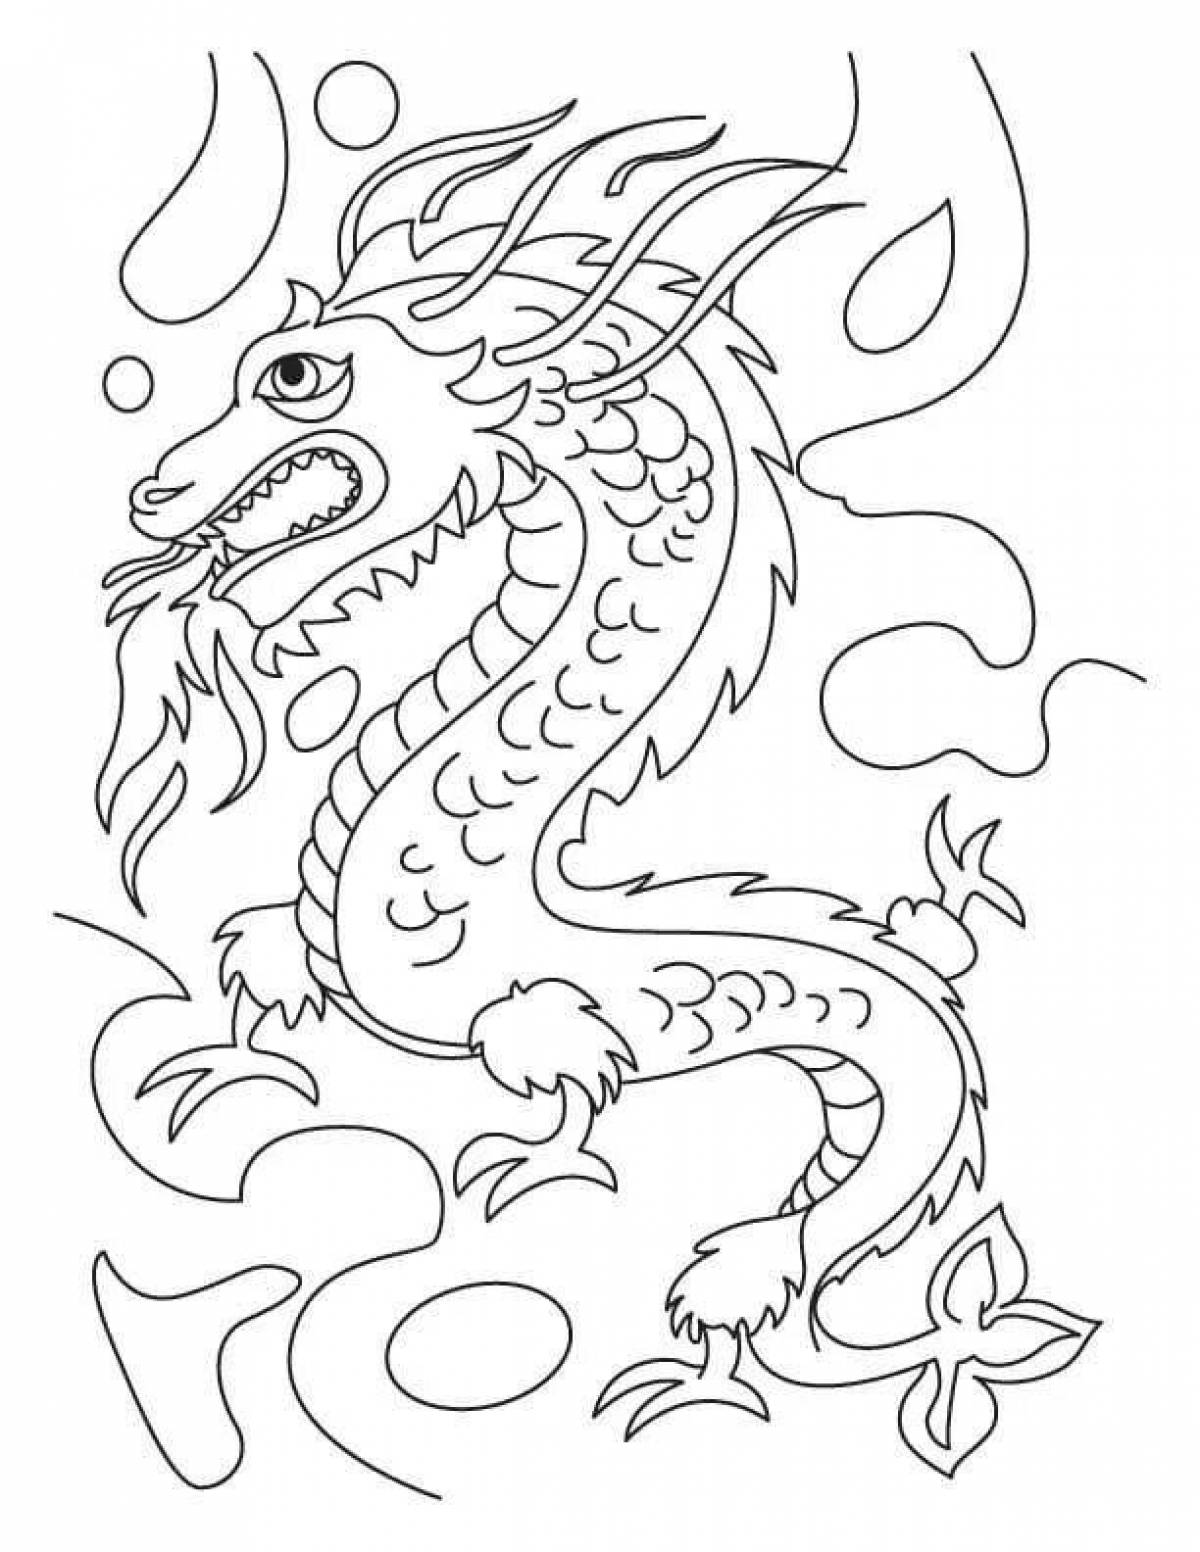 Голова китайского дракона рисунок сбоку